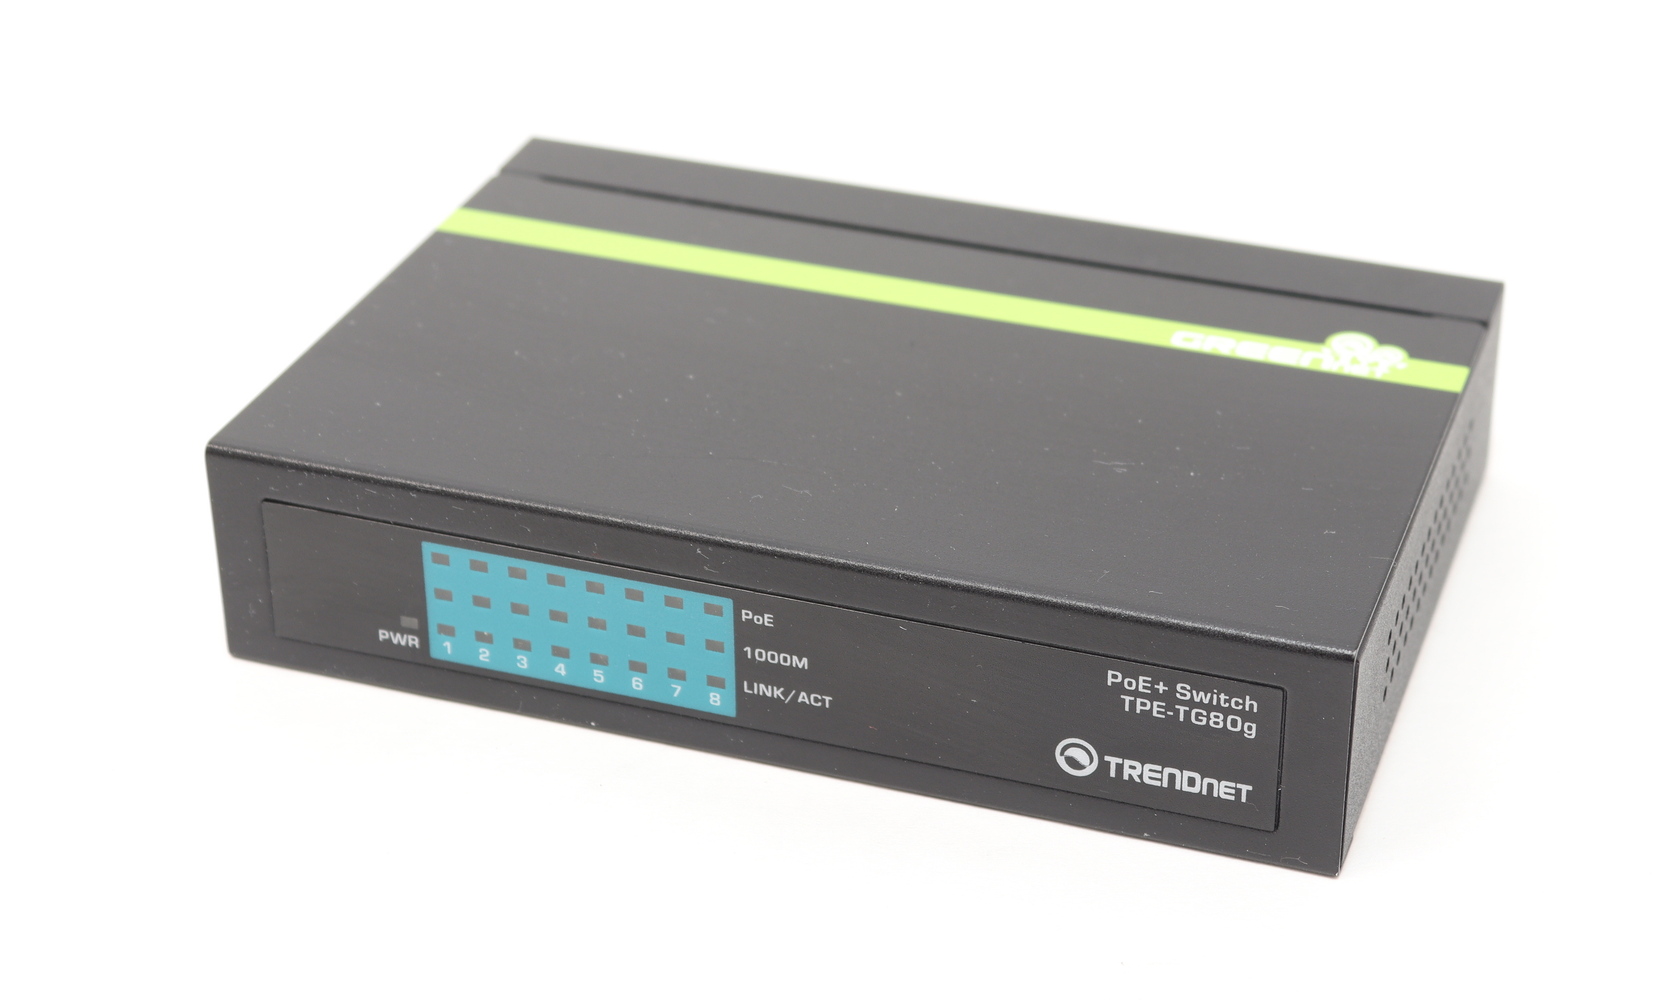 TRENDnet TEG-S16Dg 8-Port Gigabit GreenNet Switch w/ Power Cord